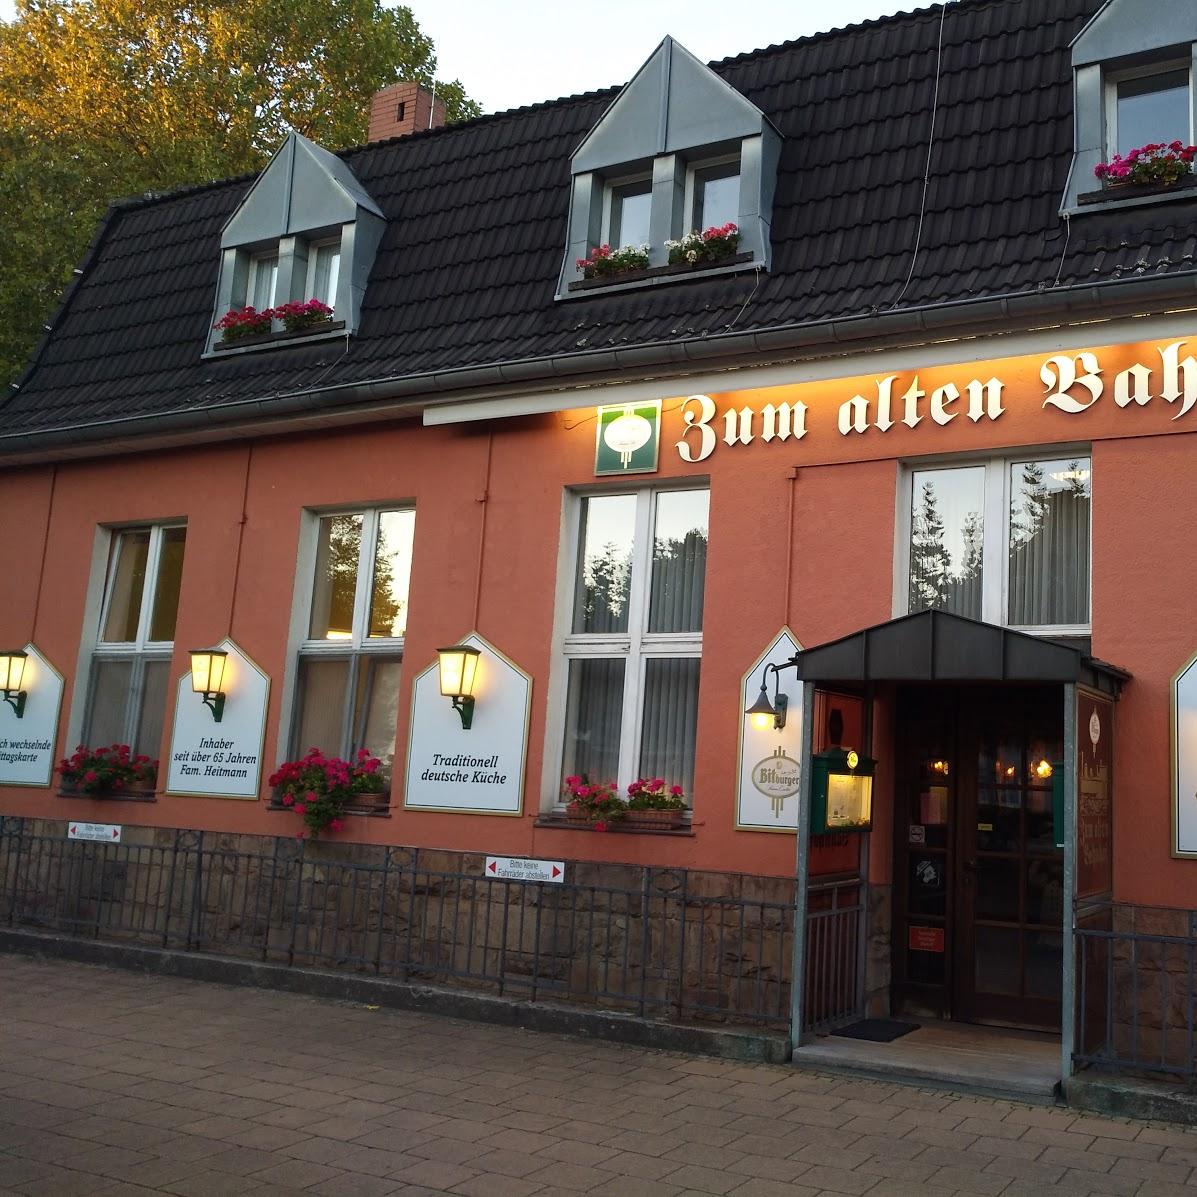 Restaurant "Zum alten Bahnhof Styrum" in Mülheim an der Ruhr